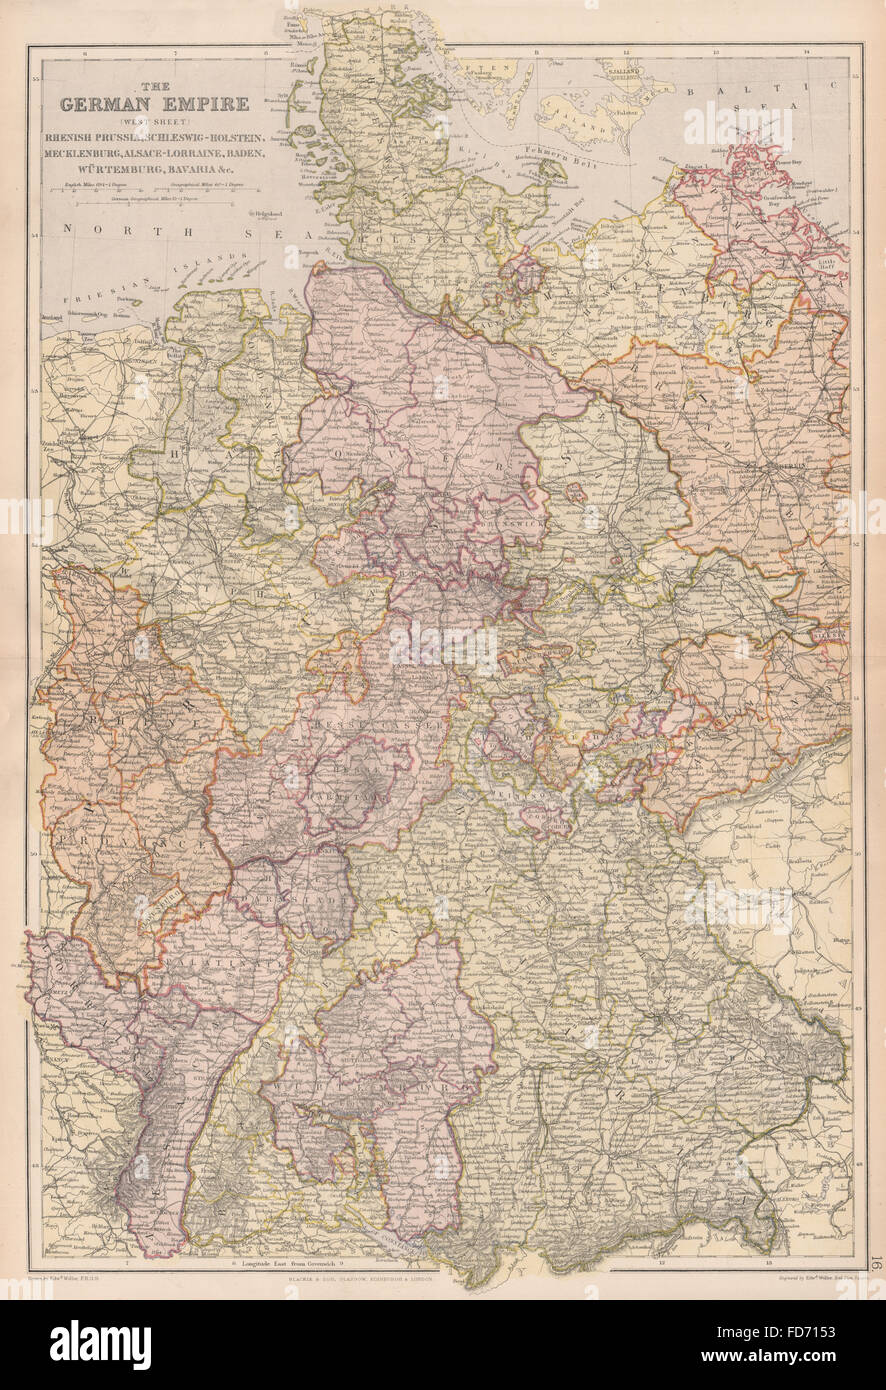 Imperio alemán West: Inc. Alsace-Lorraine. Prusia renana Baviera &c, 1882 mapa Foto de stock